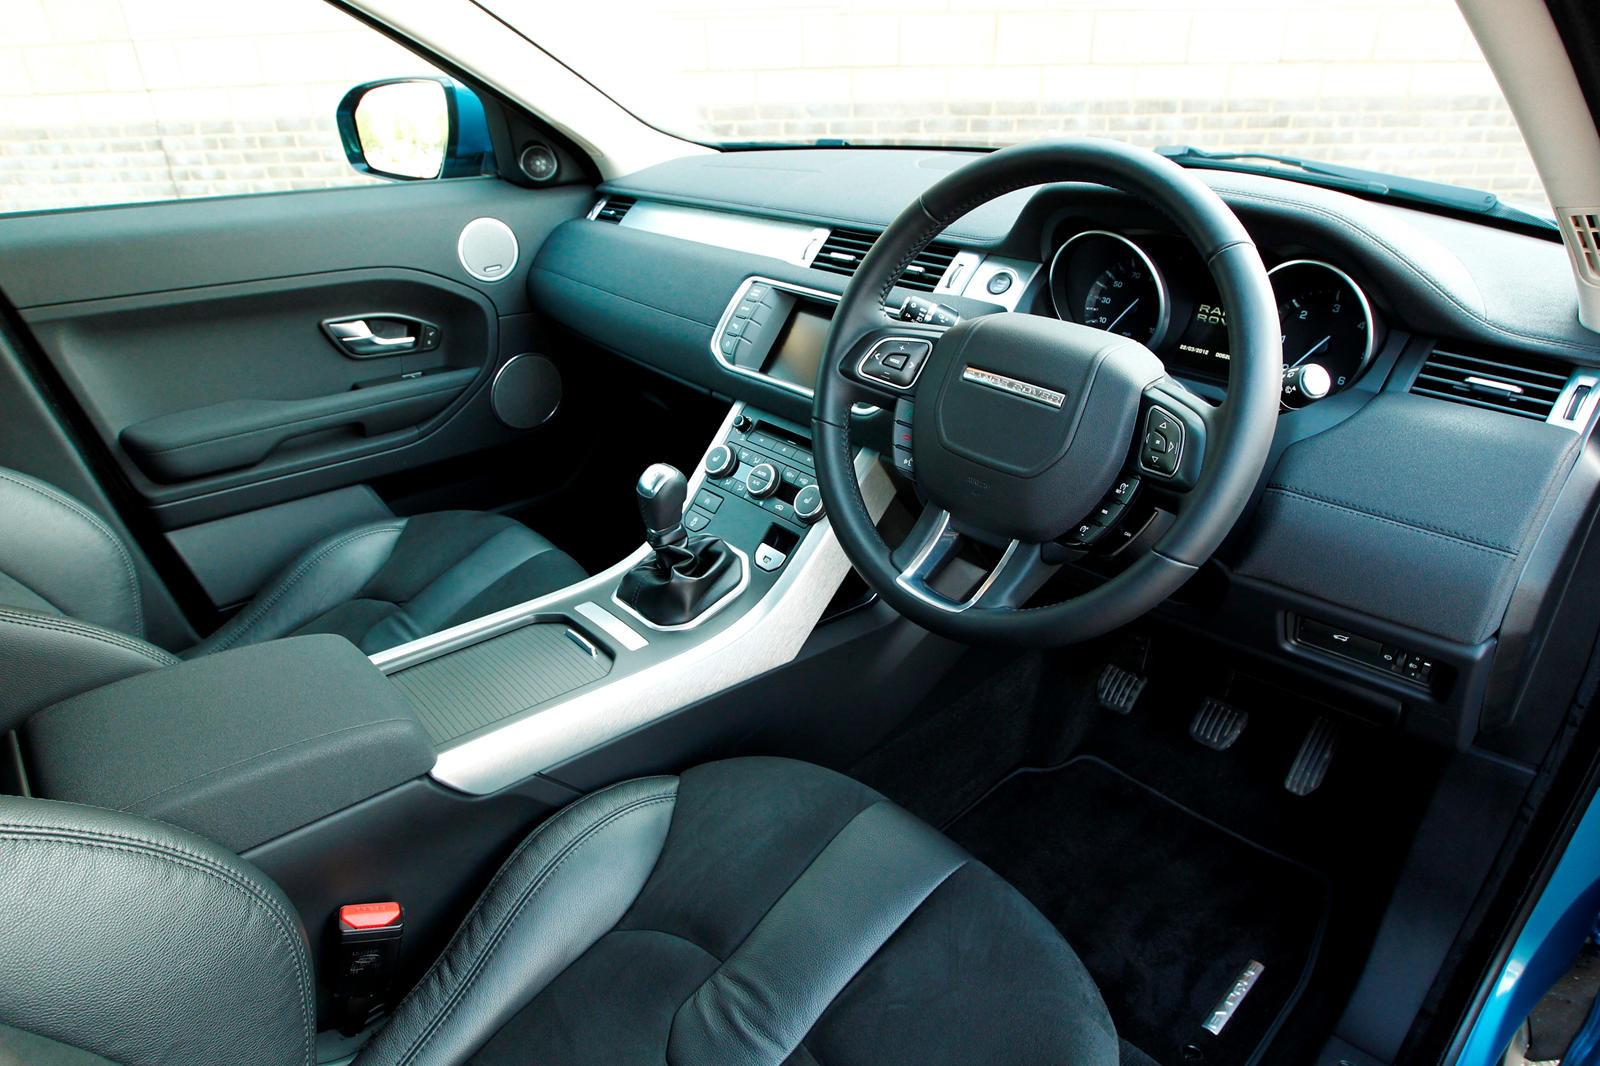 2014 Land Rover Range Rover Evoque Interior Photos | CarBuzz